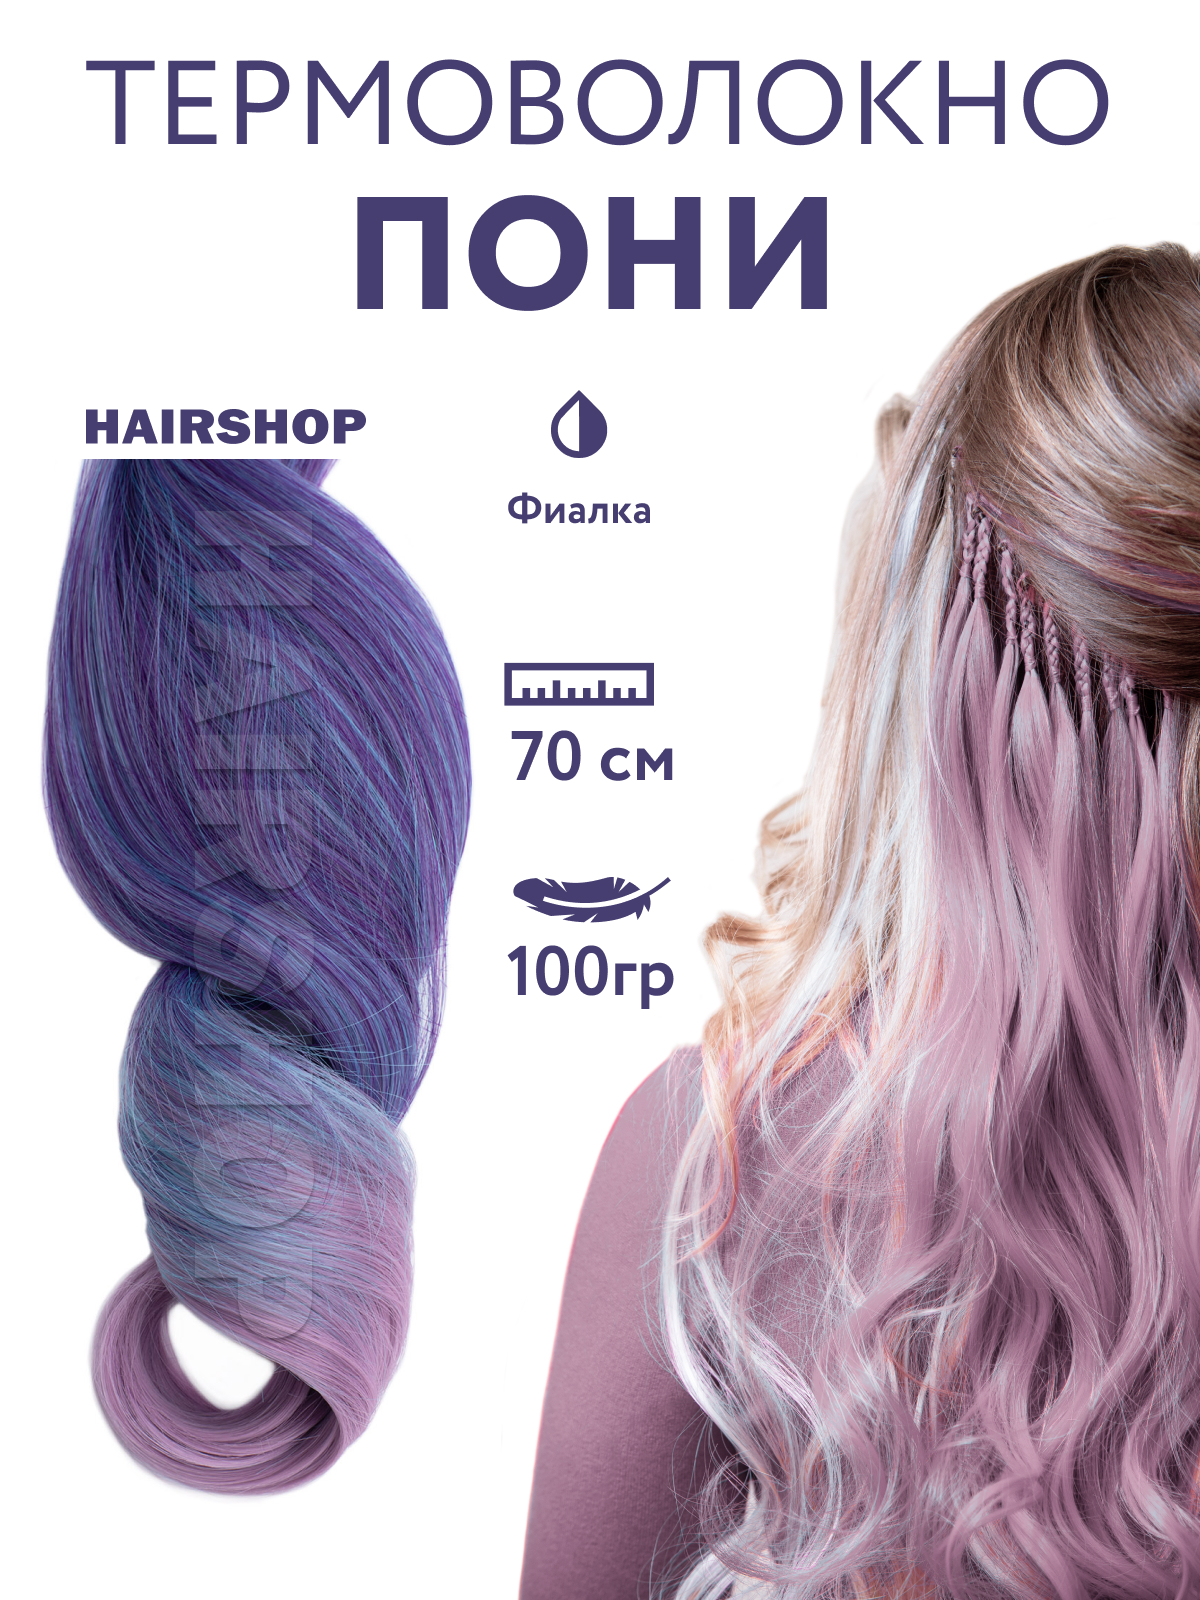 Канекалон Hairshop Пони HairUp для точечного афронаращивания Фиалка 1,4м